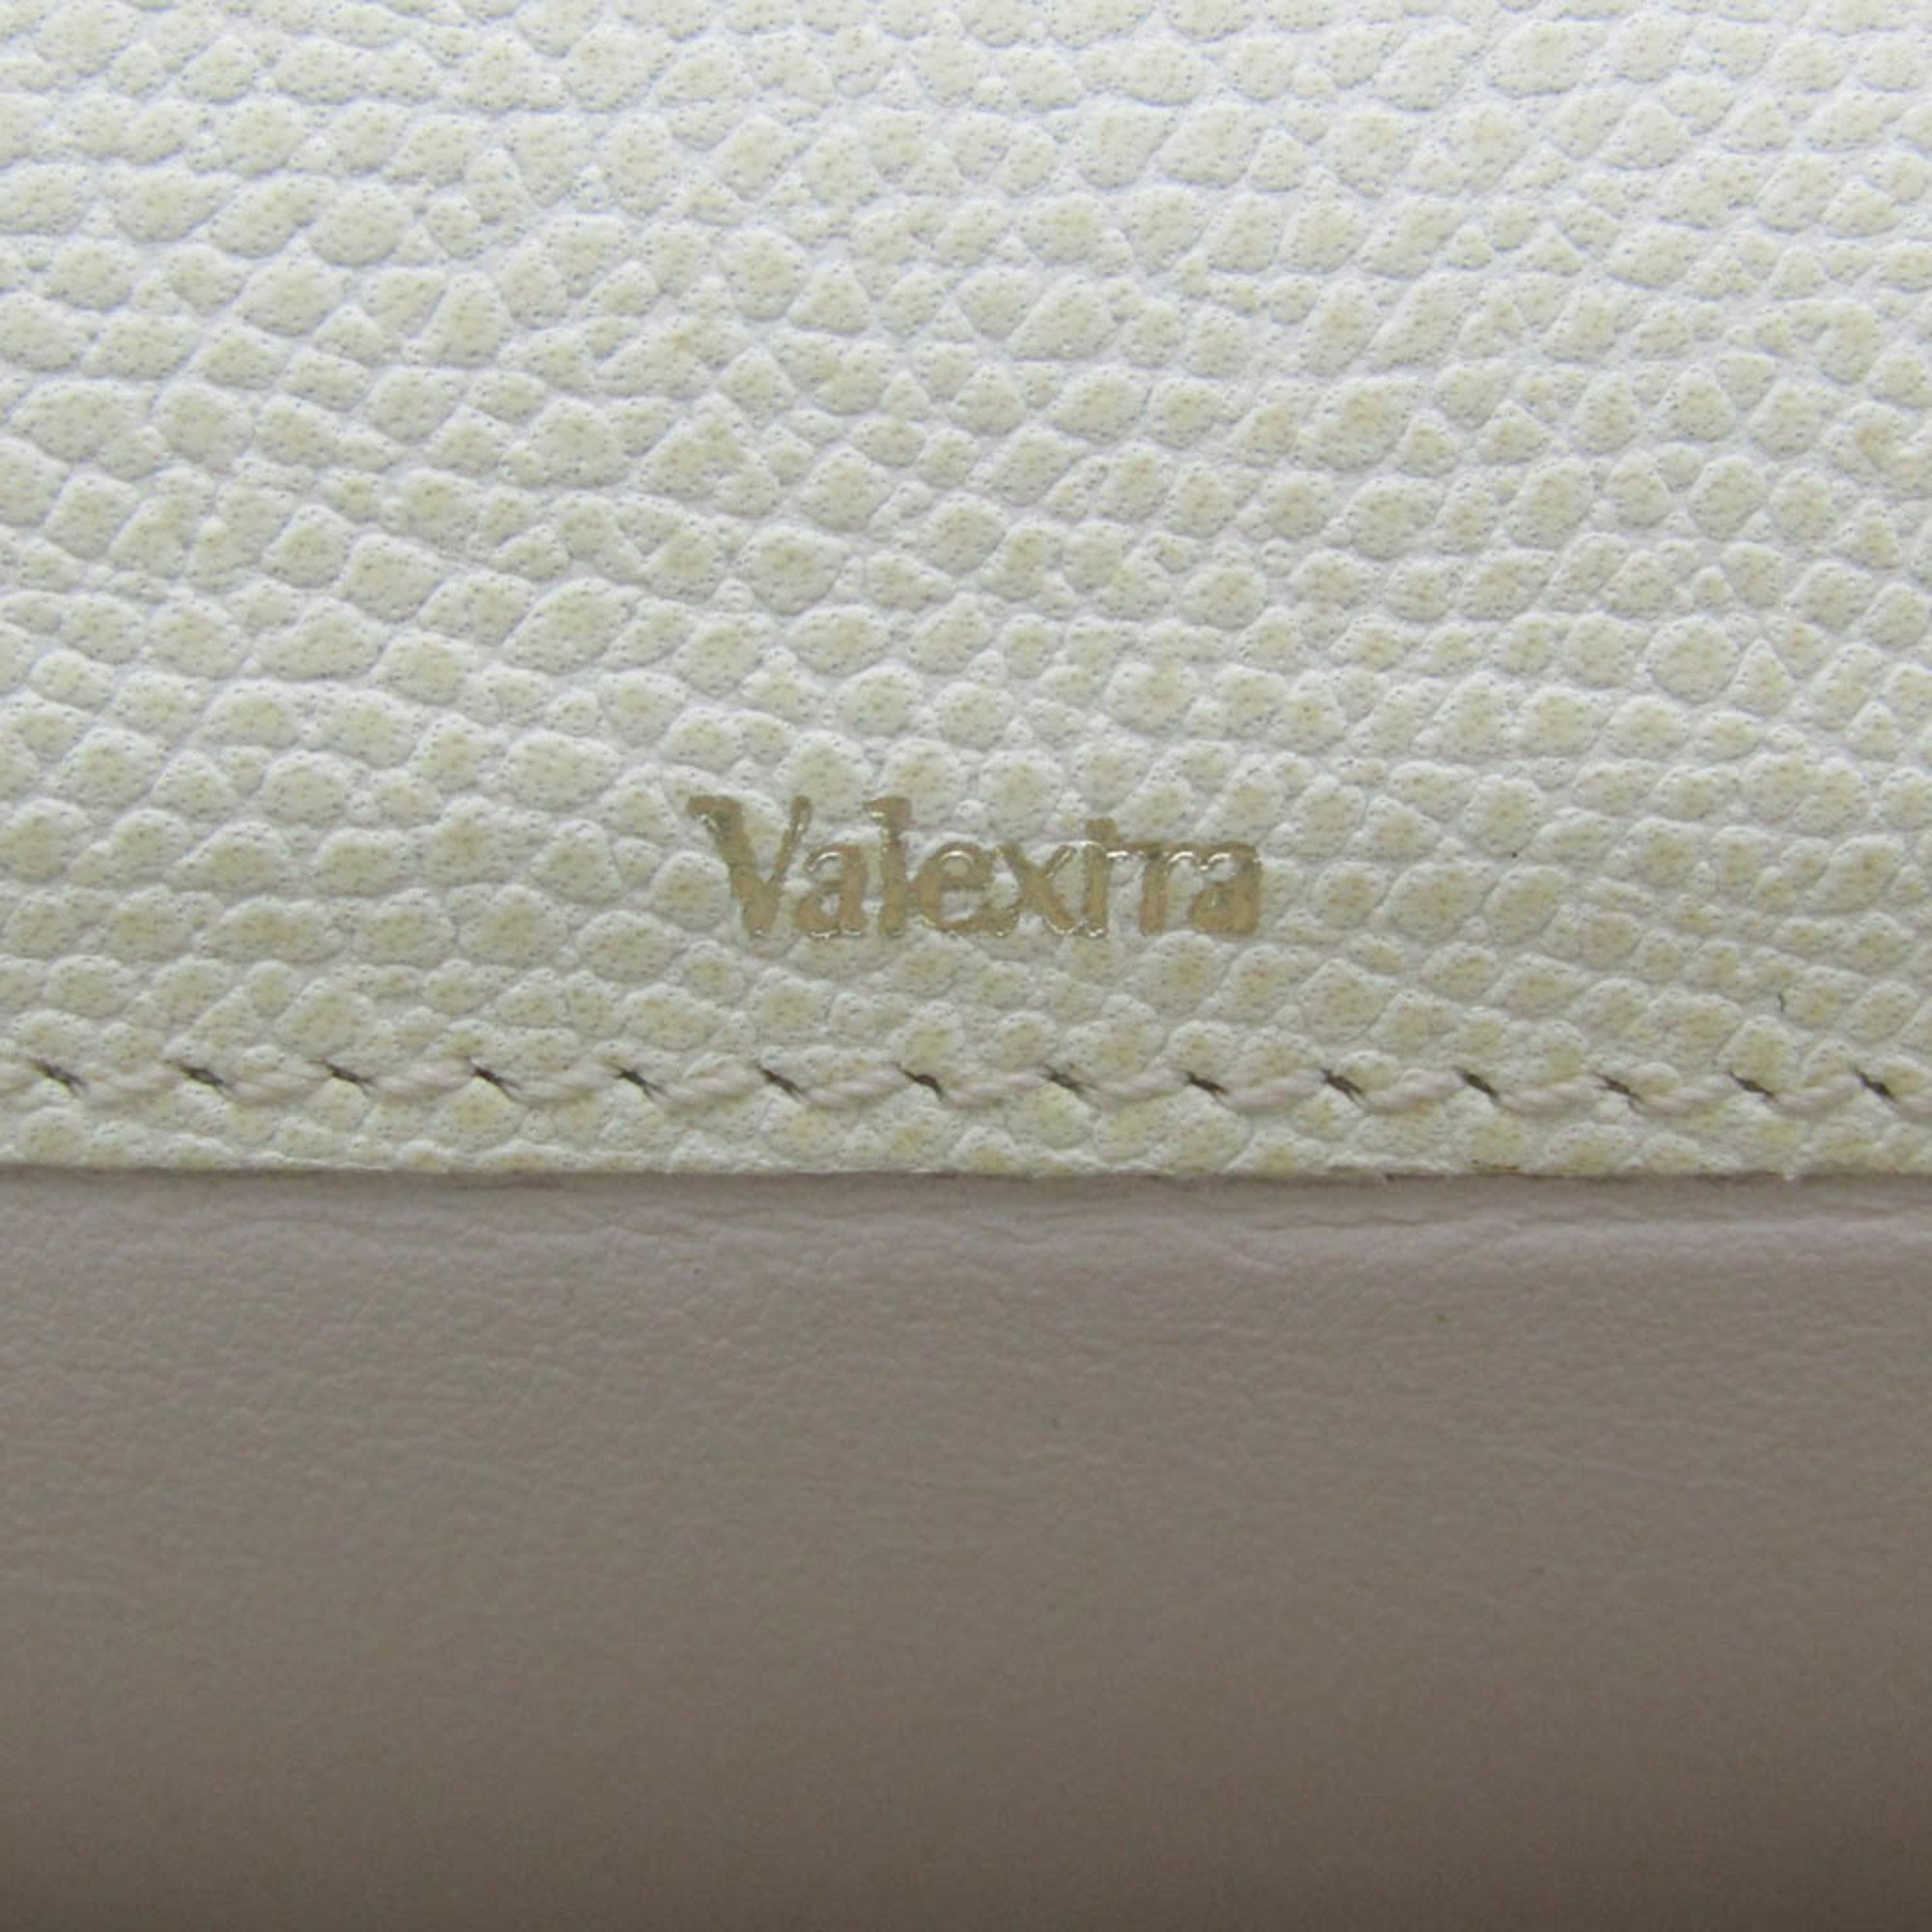 ヴァレクストラ(Valextra) 取り外し可能 12カードホルダー V9L15 メンズ,レディース レザー 長財布（二つ折り） クリーム